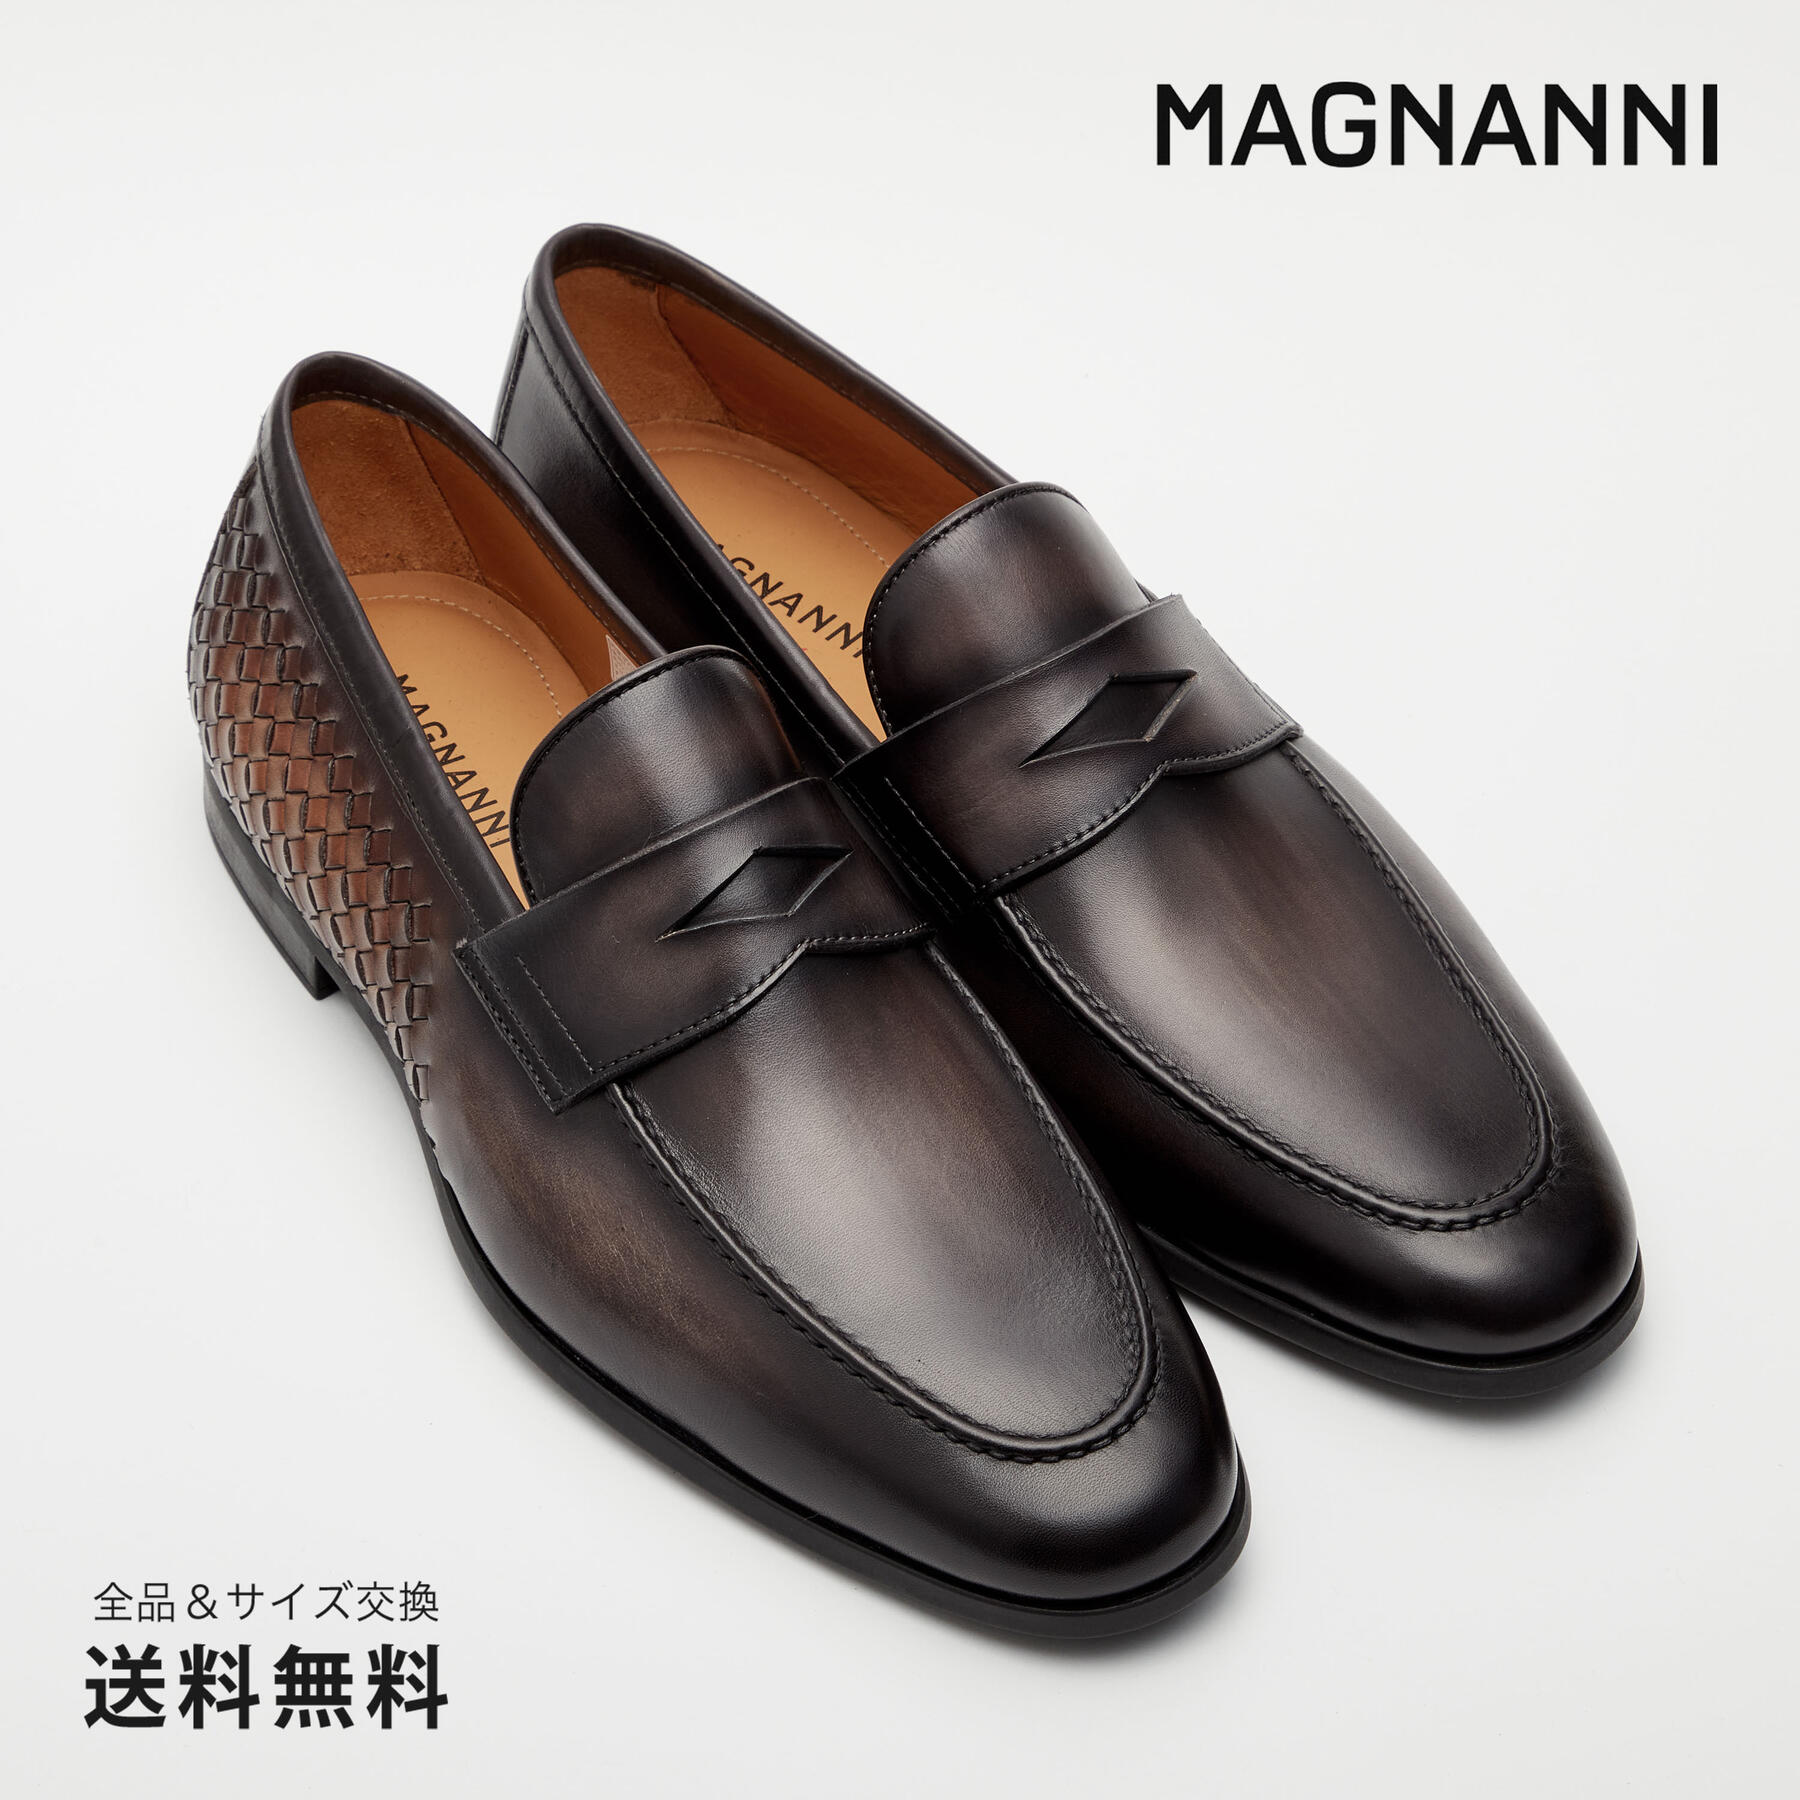 最新品得価T\'837 MAGNANNI マグナーニ メンズ コインローファー ビジネスシューズ 39 約 24.5cm ブラウン レザー 本革 高級靴 24.5cm